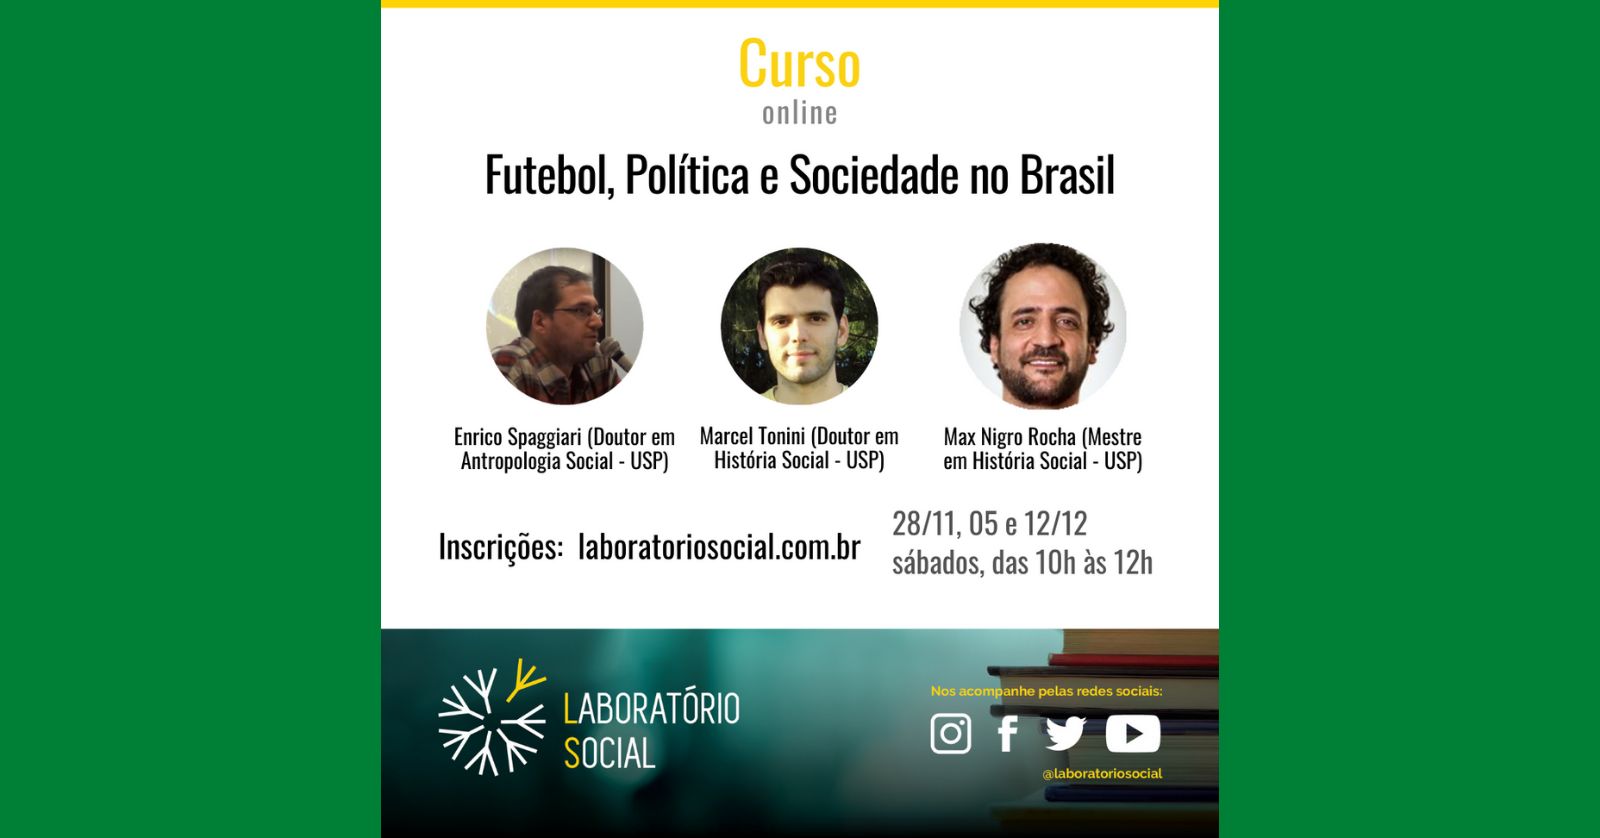 Futebol, Política e Sociedade no Brasil